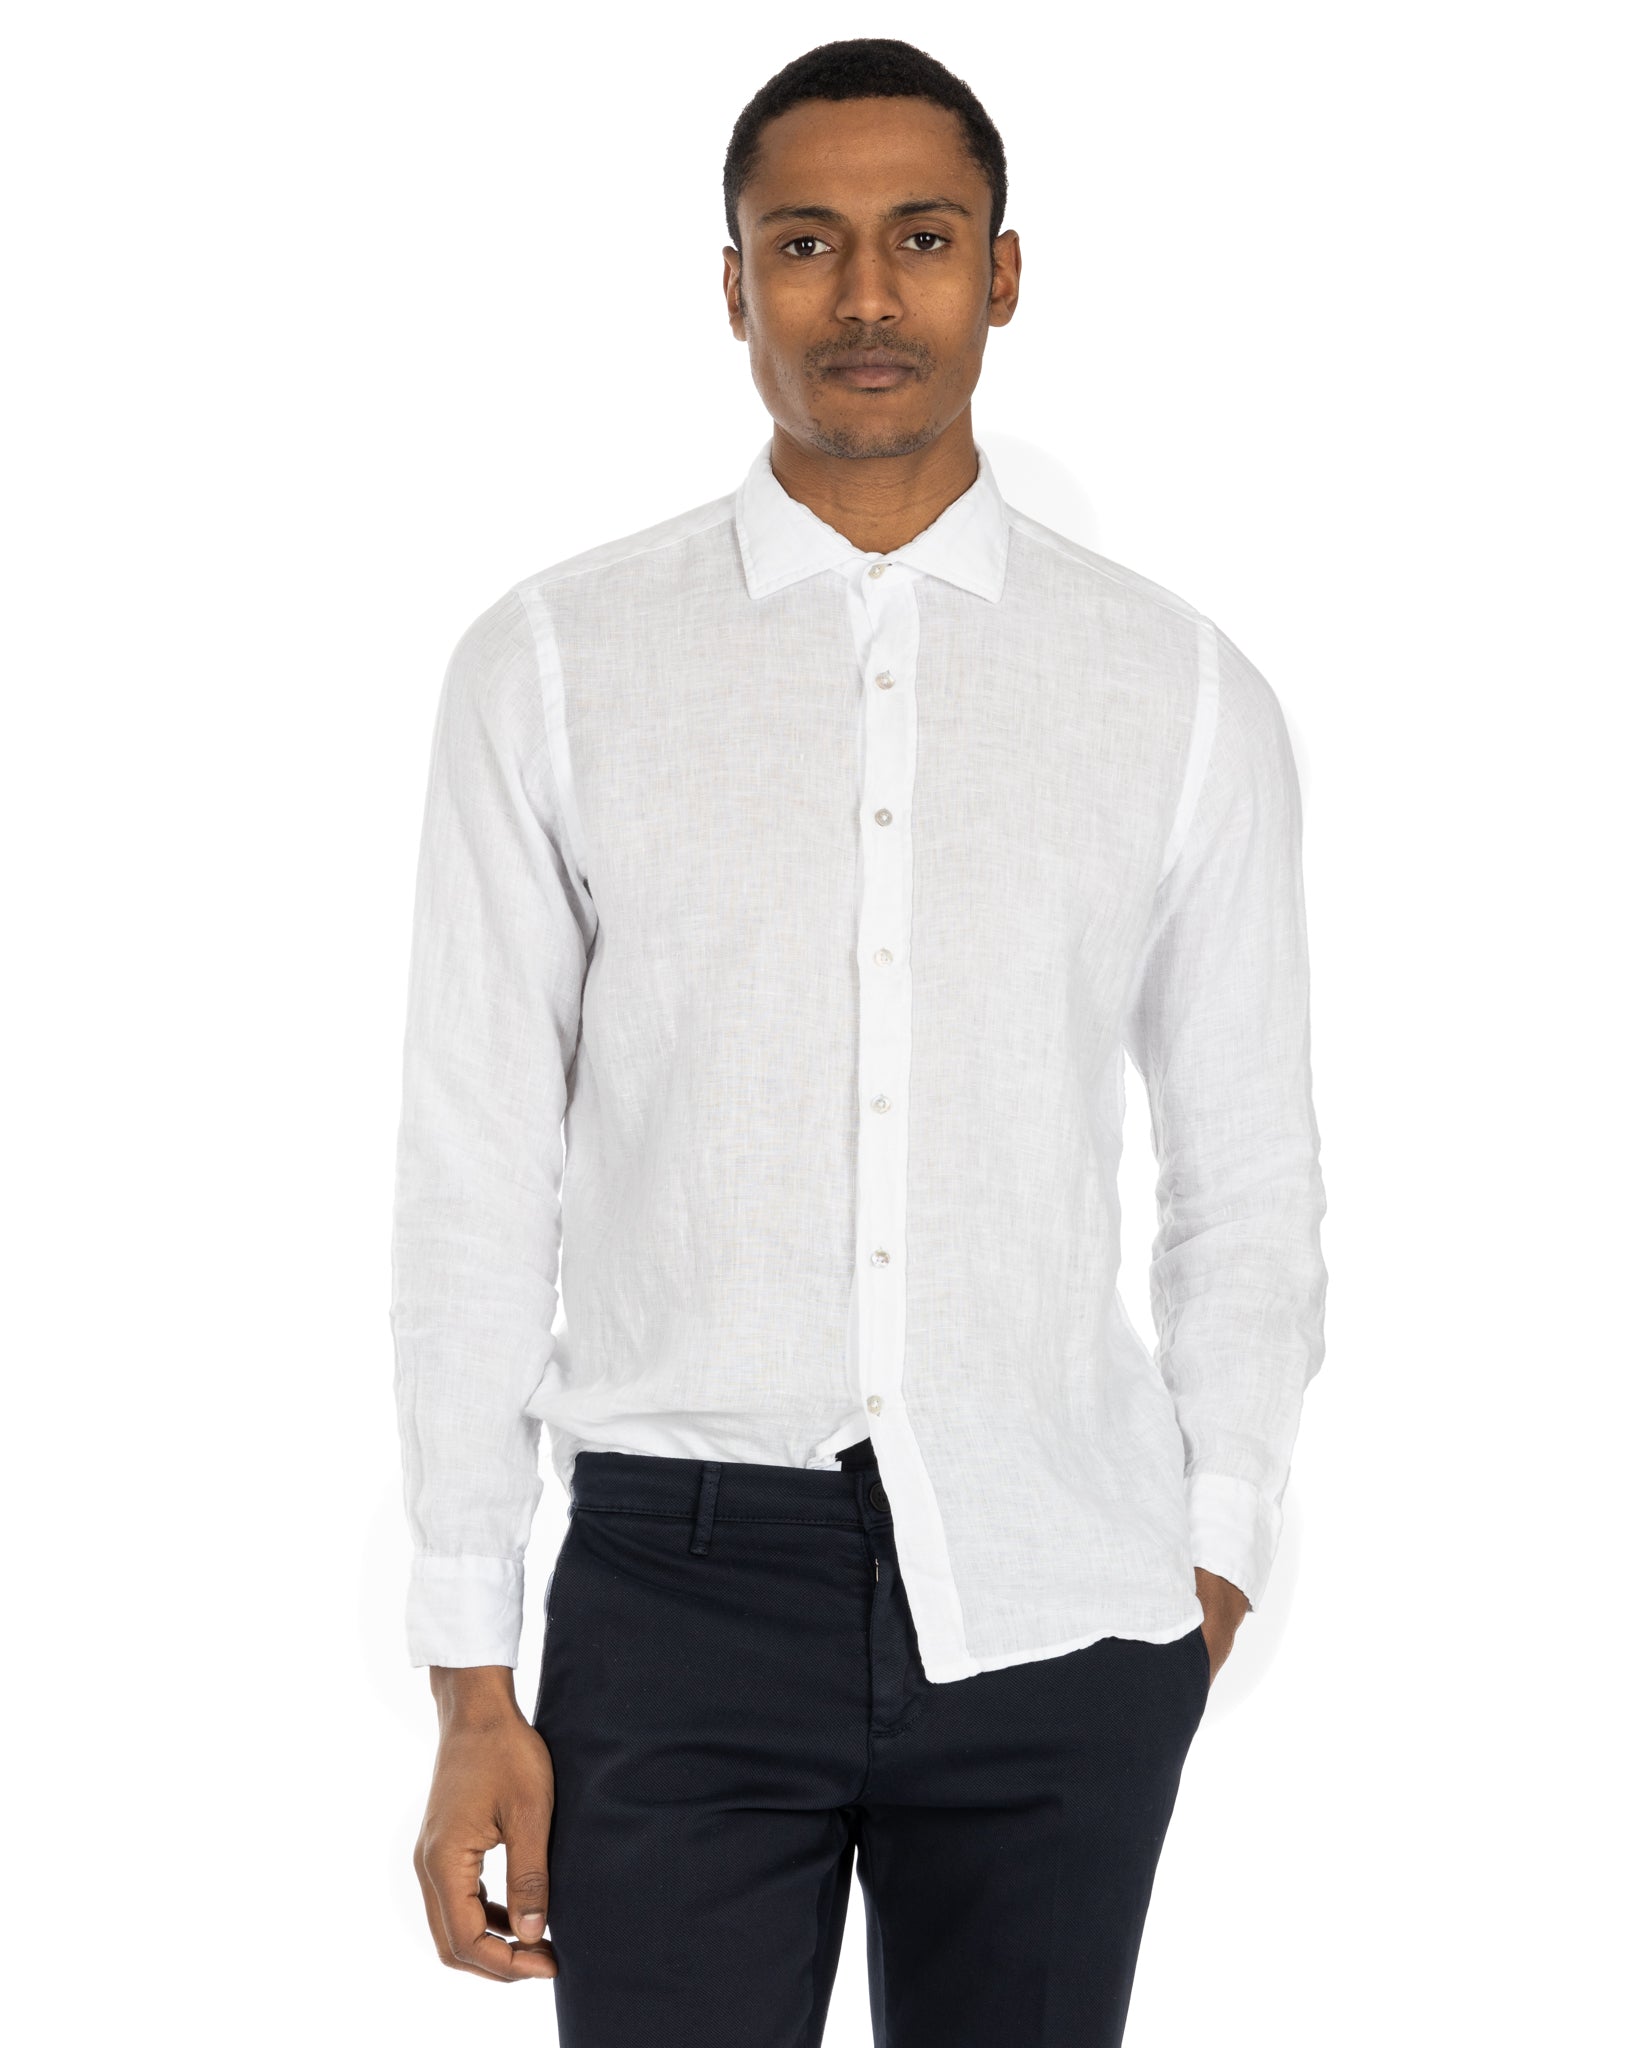 Montecarlo - camicia in puro lino bianco